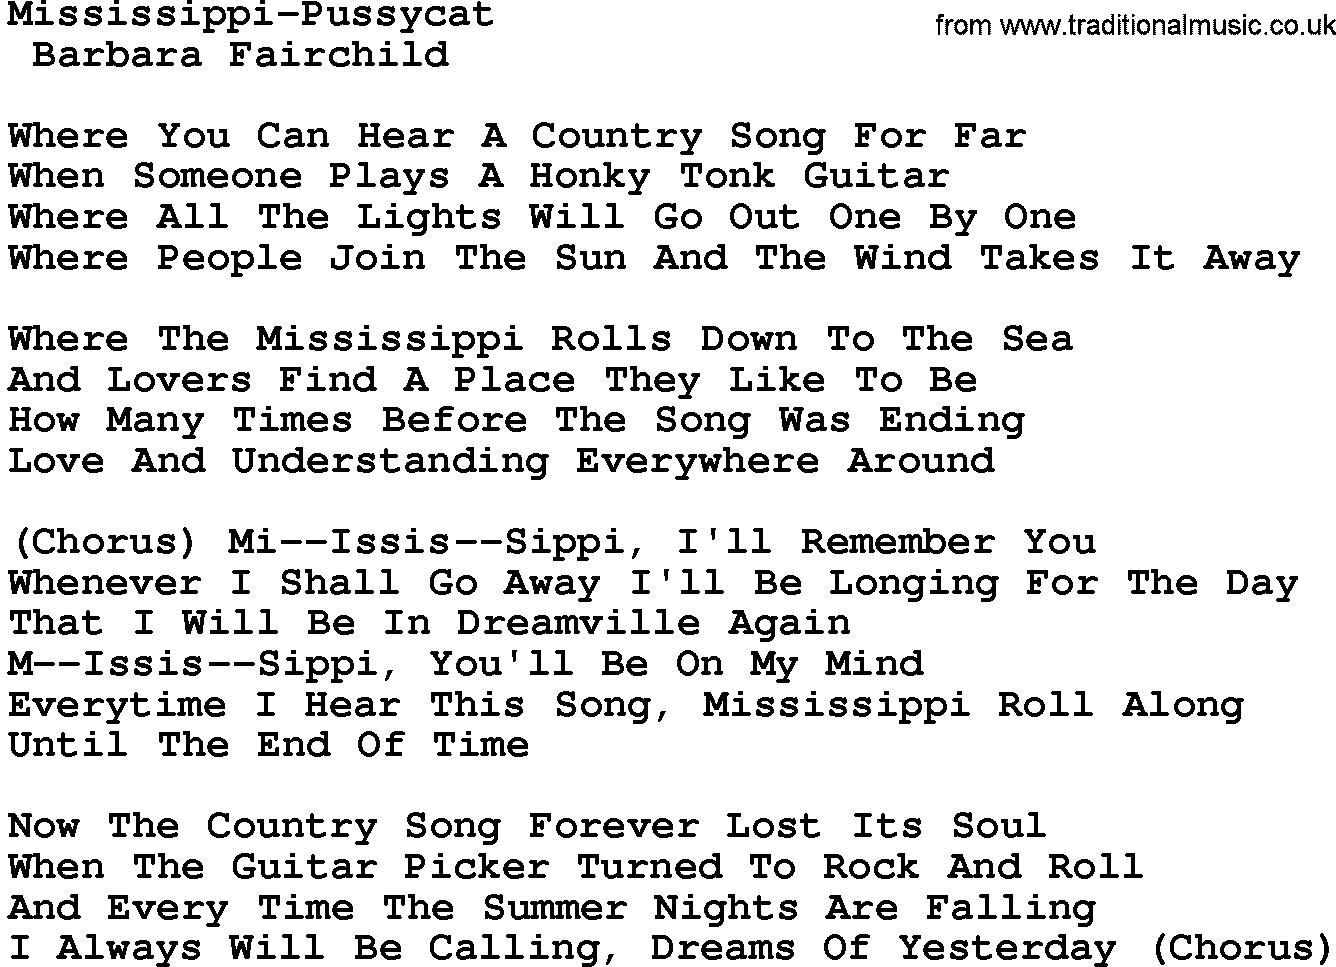 Mississippi Pussycat teksten en akkoorden als PDF bestand voor downloaden